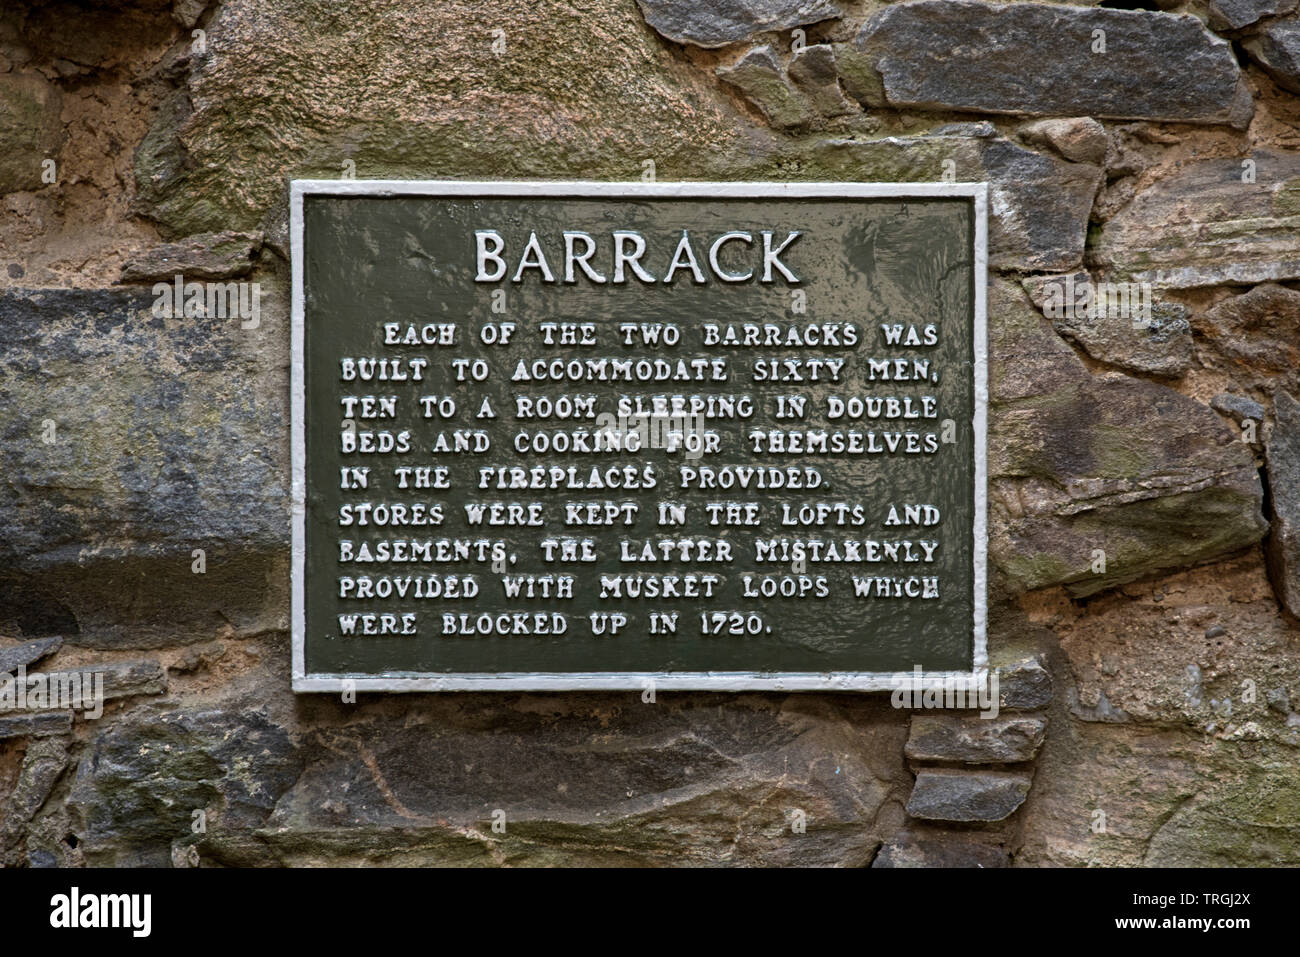 Placa informativa en Ruthven Barracks, ahora una ruina, perteneciente al Historic Scotland, cerca del Parque Nacional de Cairngorms en Kingussie, Scotland, Reino Unido Foto de stock